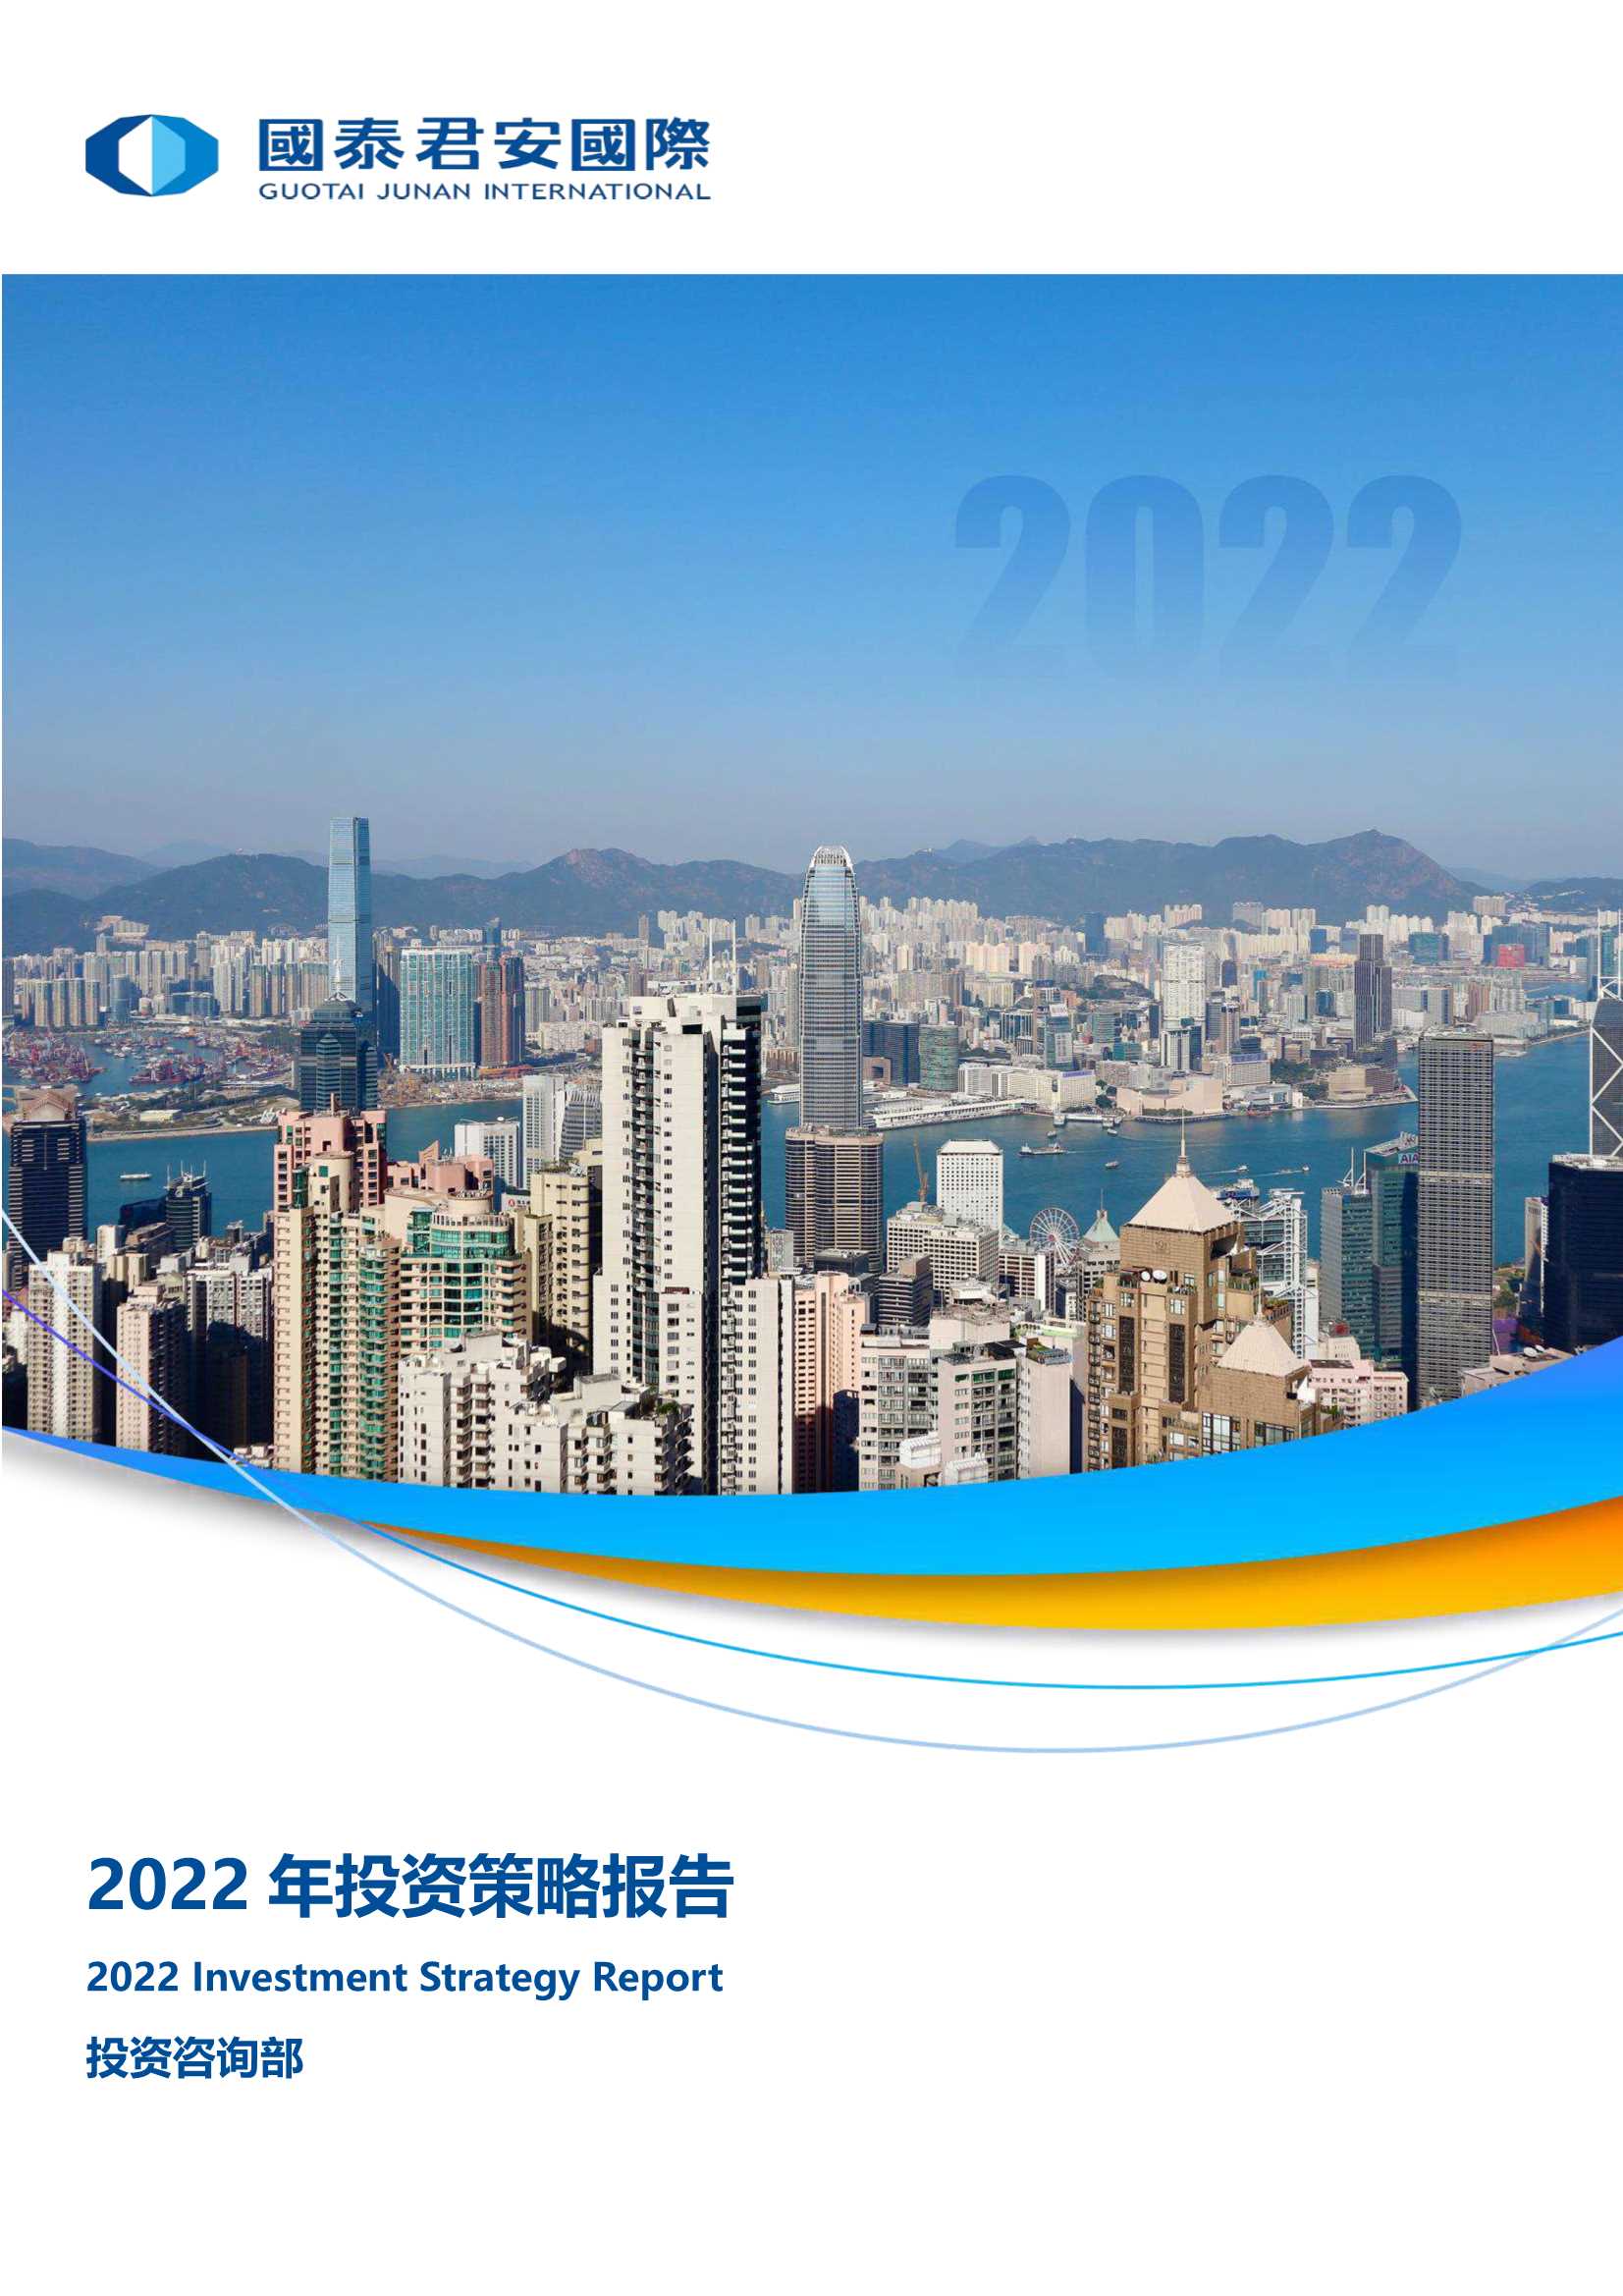 国泰君安国际-2022年投资策略报告-20220118-209页